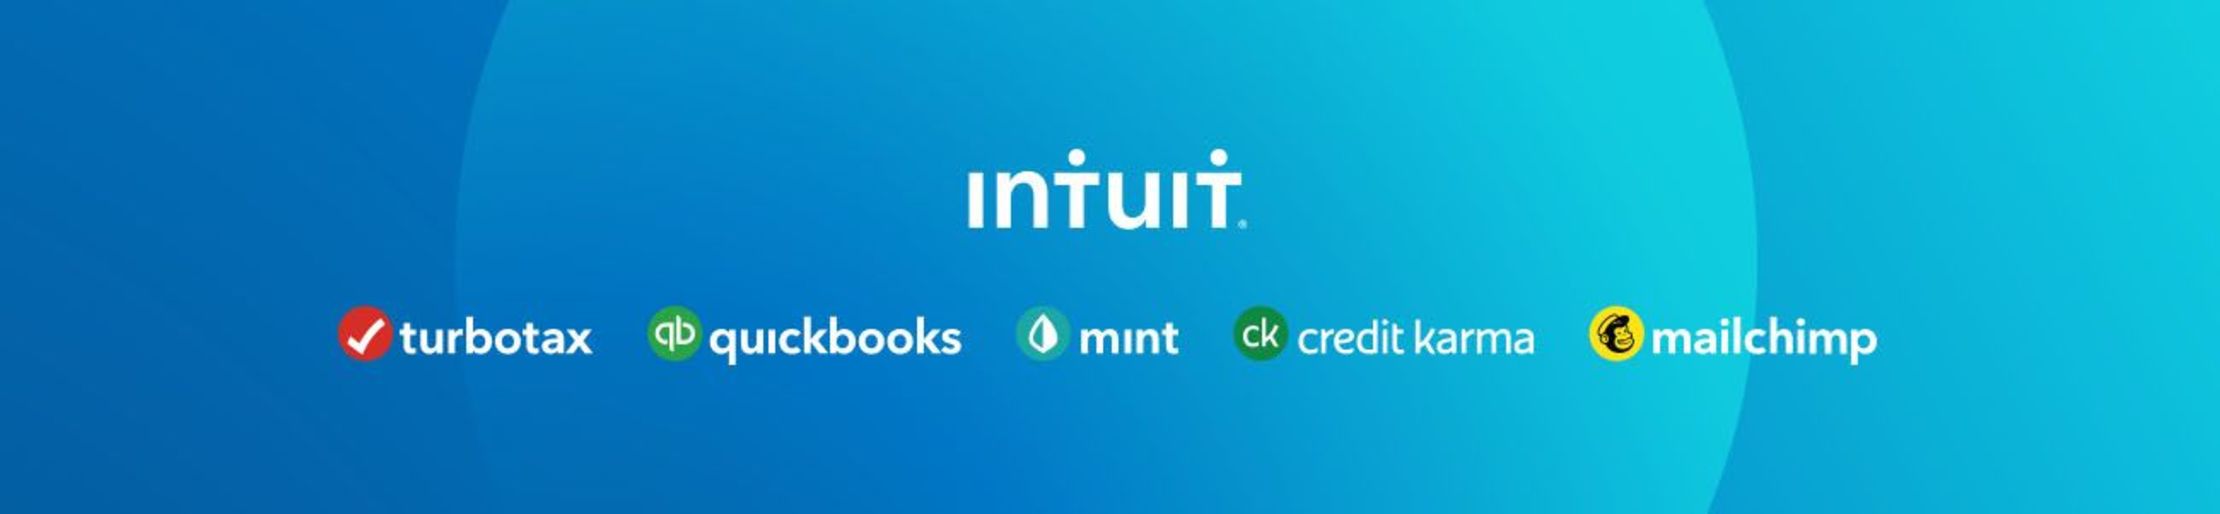 Intuit, Inc